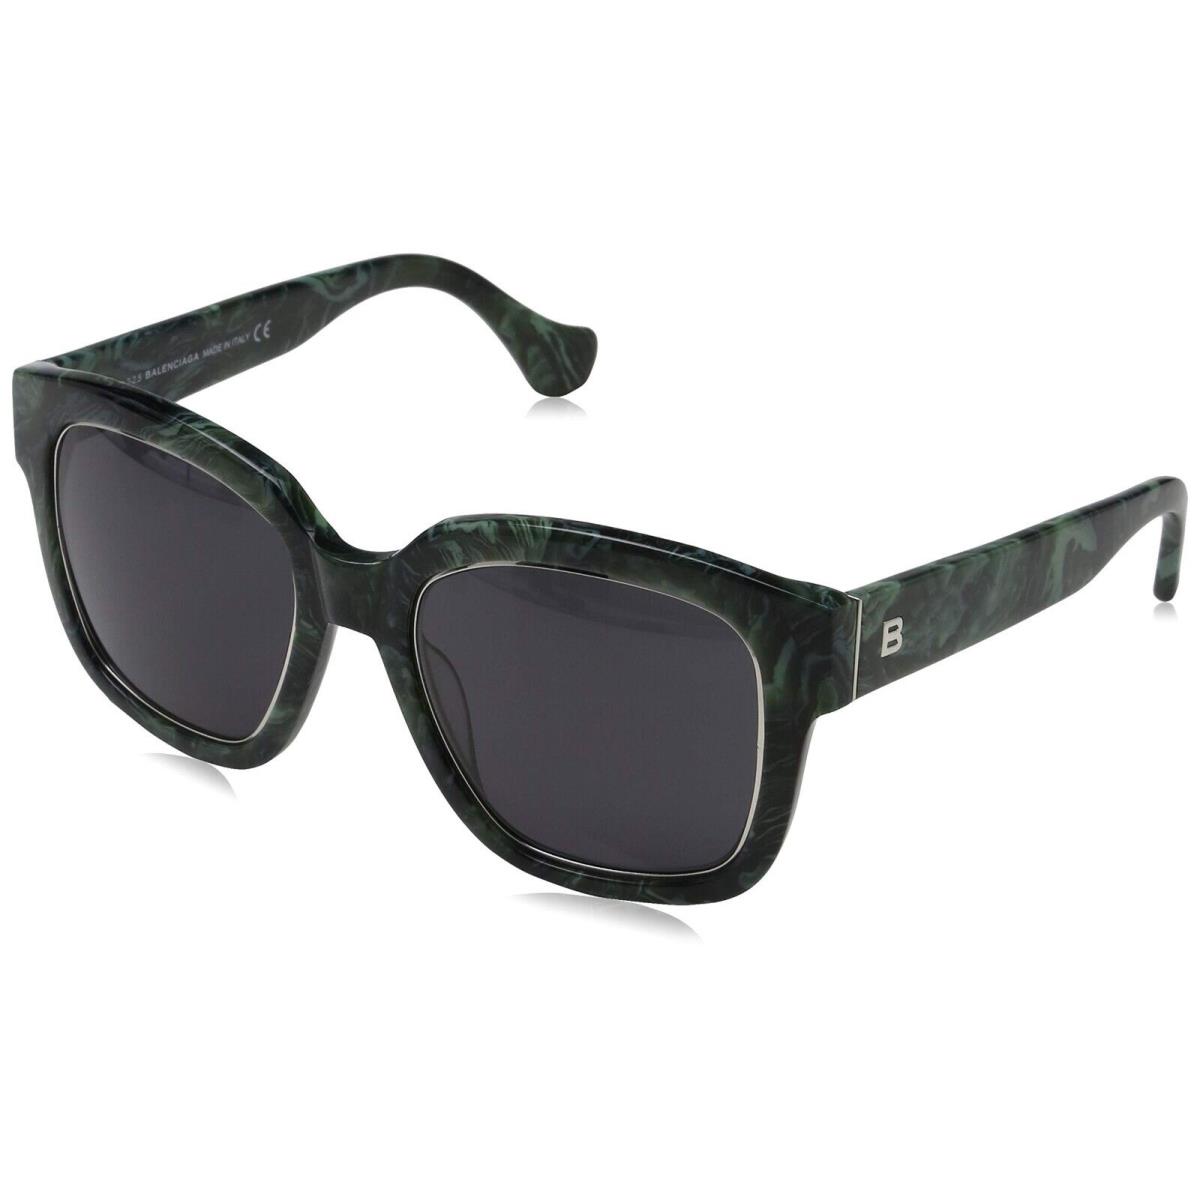 Balenciaga BA50 81B Green Square Gray Gradient Non-polarized 52mm Sunglasses